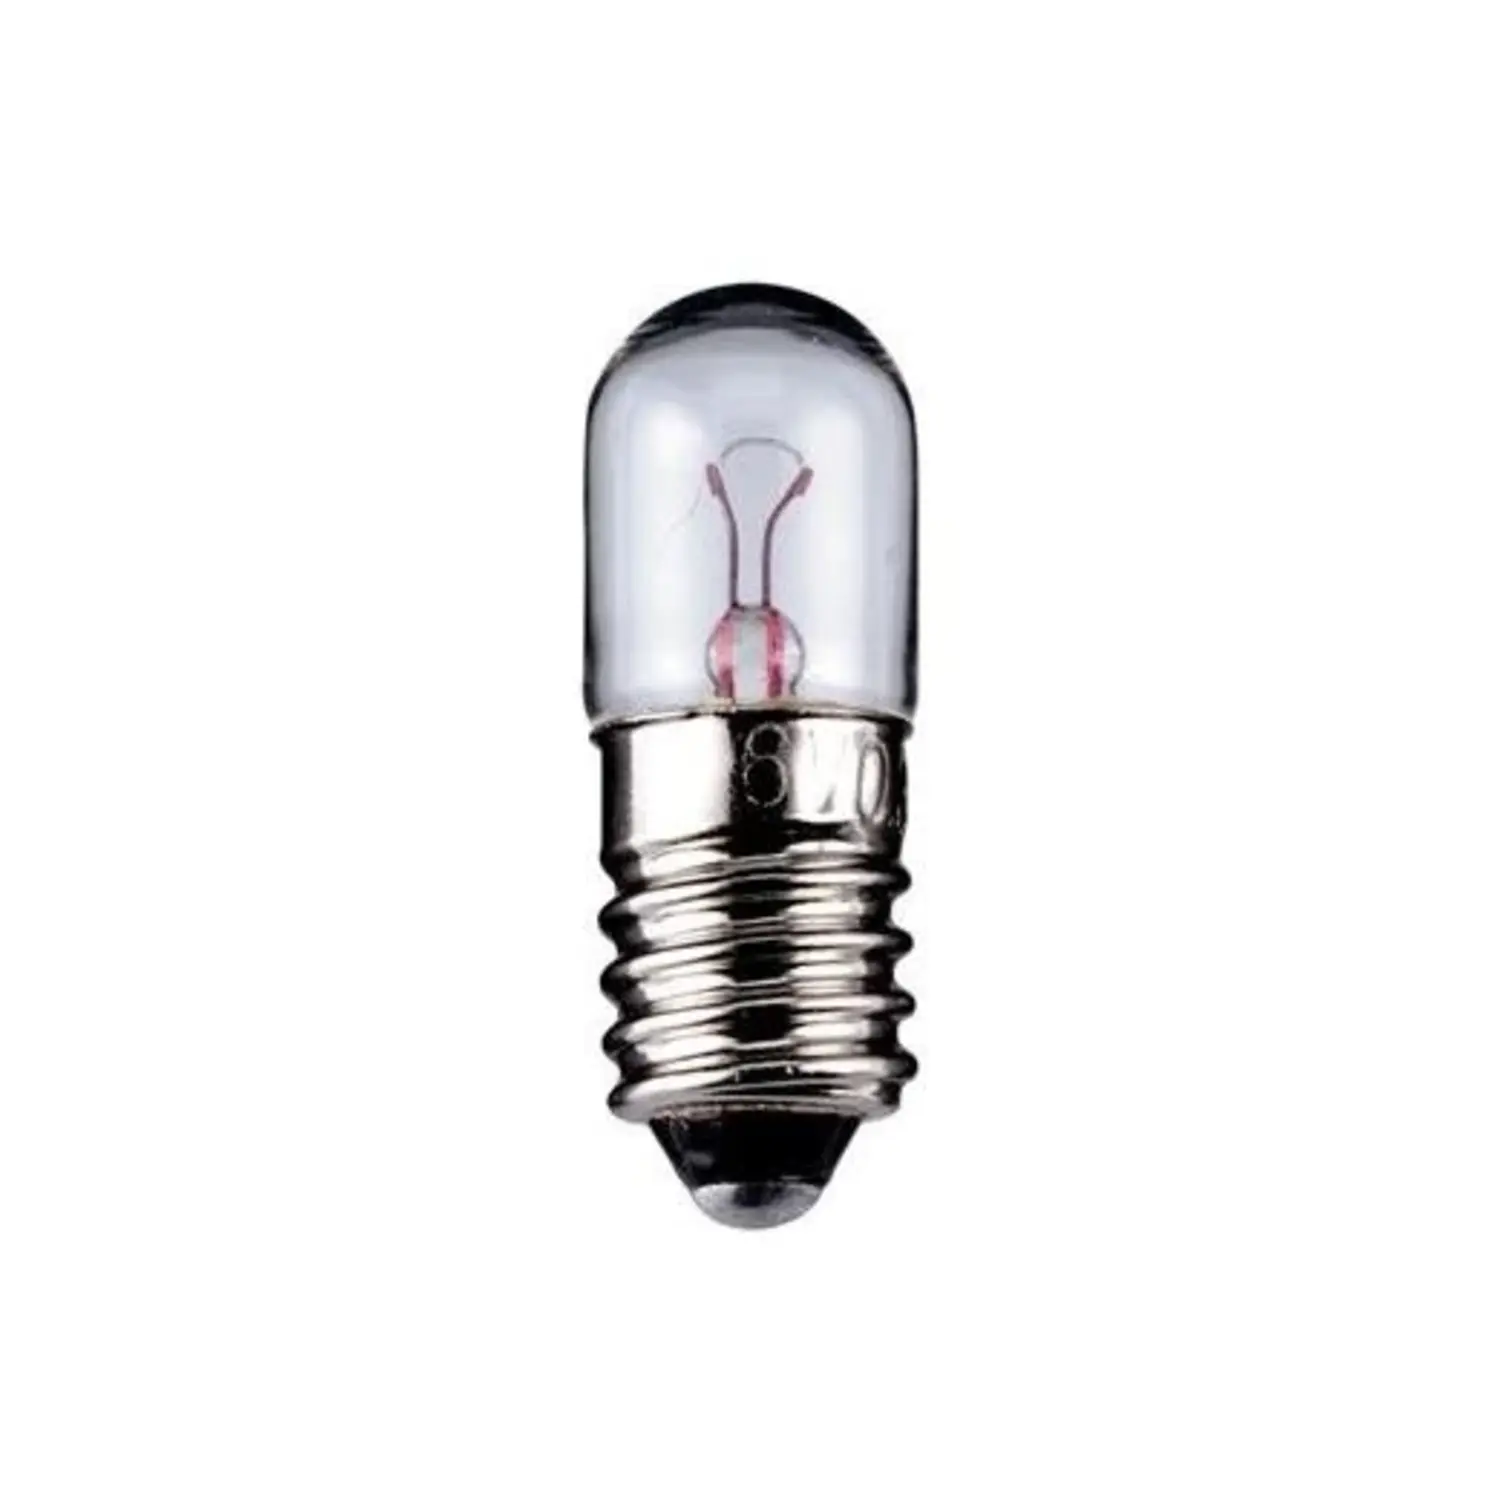 immagine del prodotto lampadina tubolare E10 bianco caldo 6 volt 2 watt 1 pezzo wnt 9310